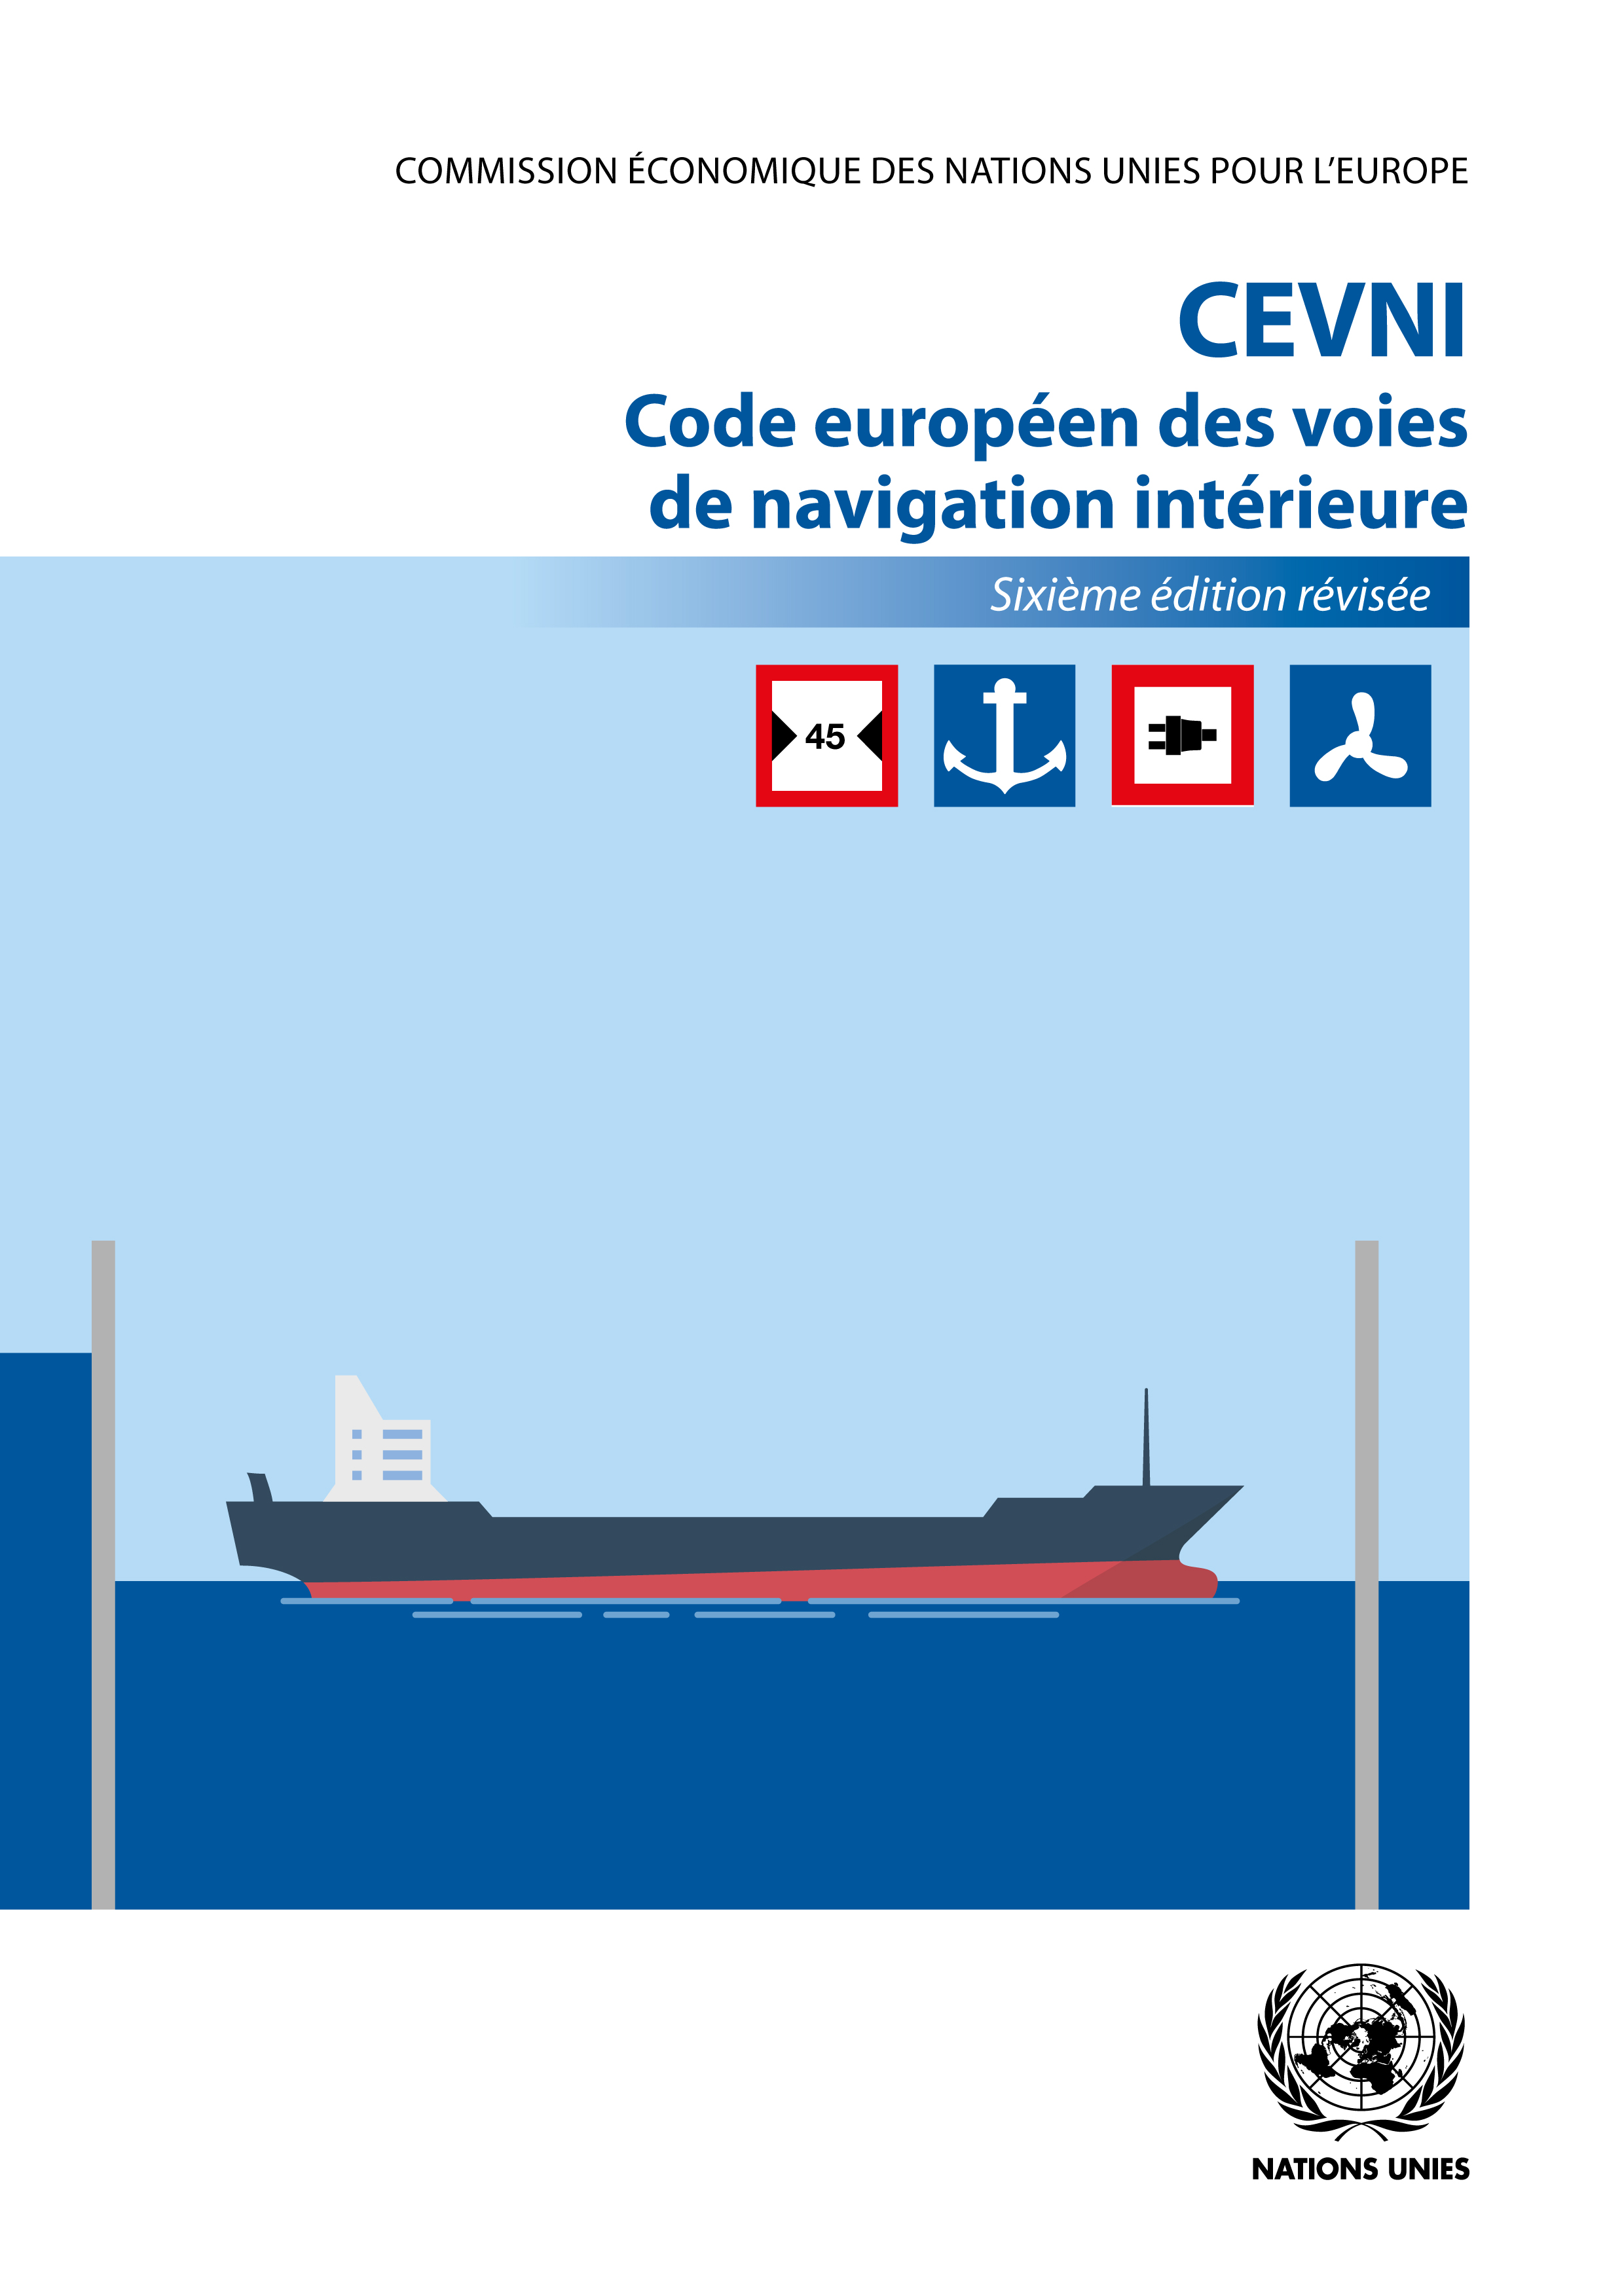 image of CEVNI Code européen des voies de navigation intérieure